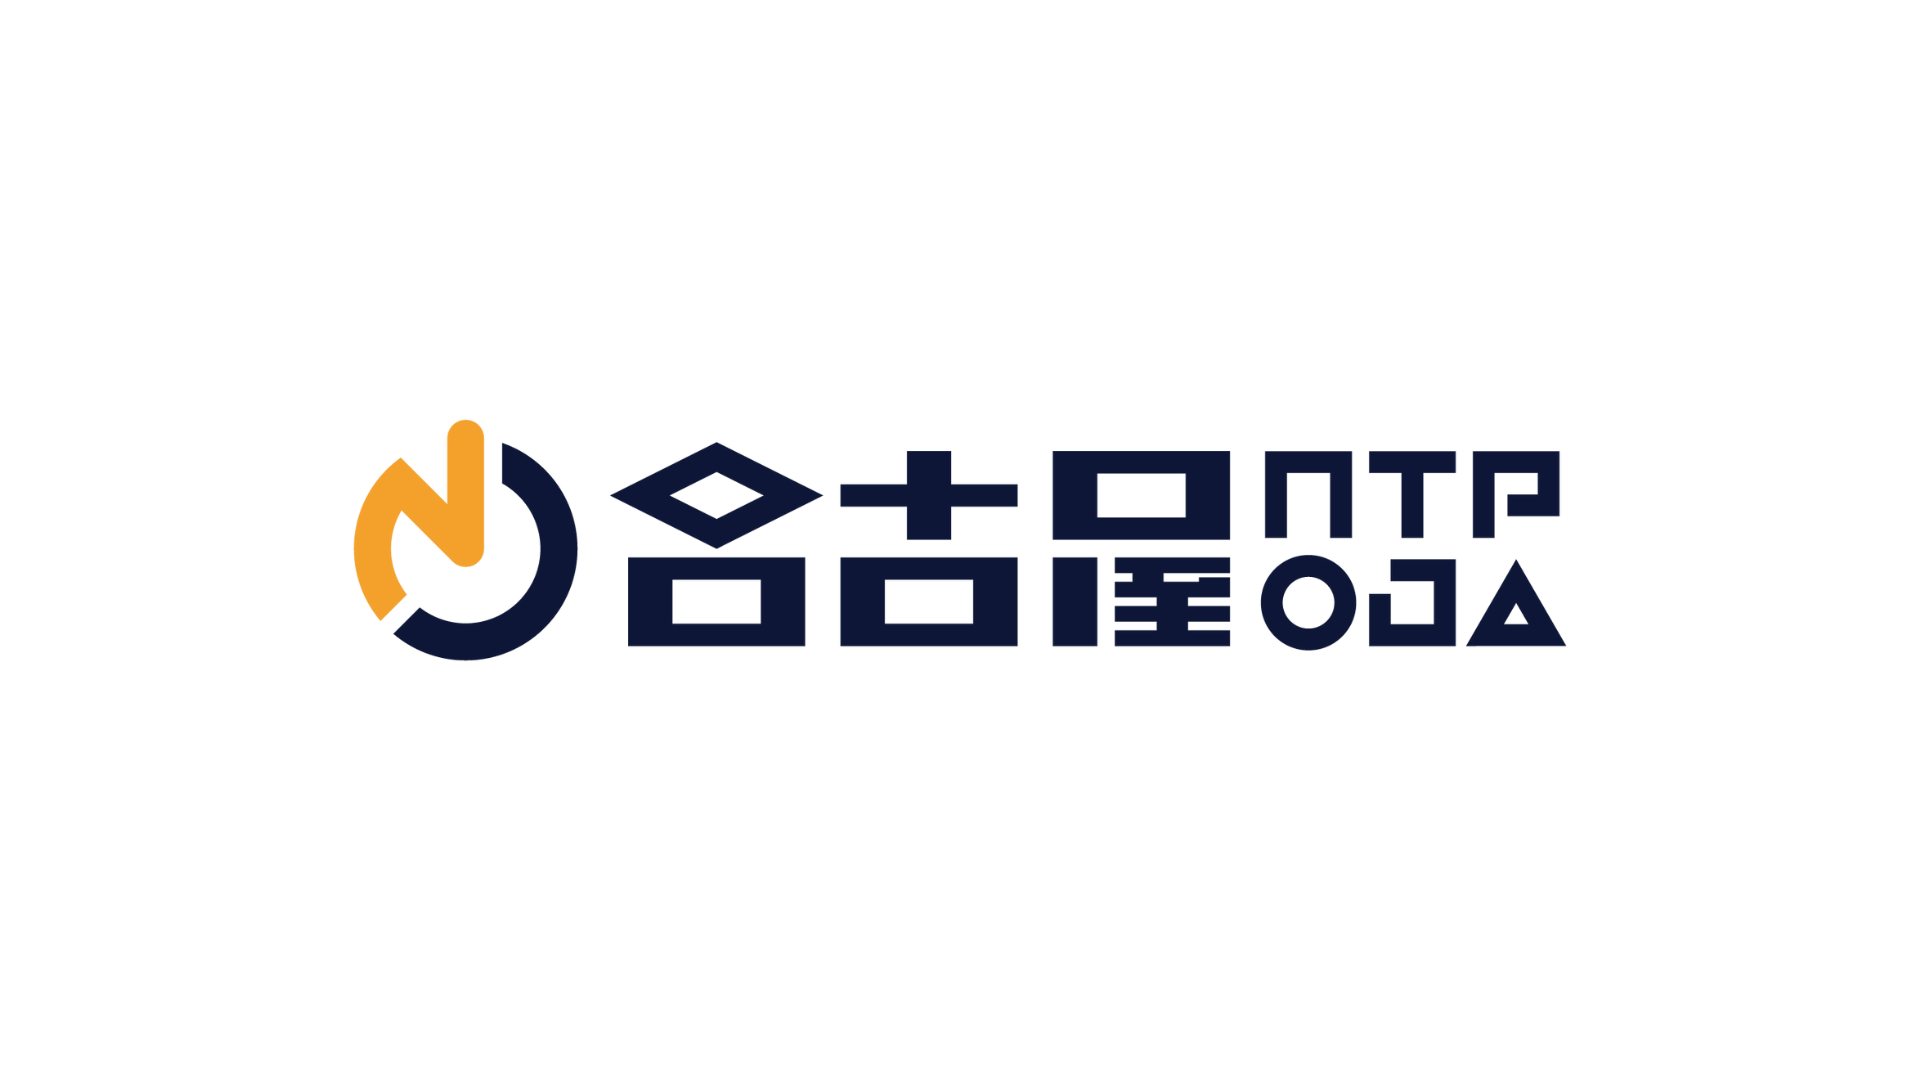 名古屋OJA eスポーツチーム 格闘部門 「名古屋NTPOJA」ファンミーティング開催！！